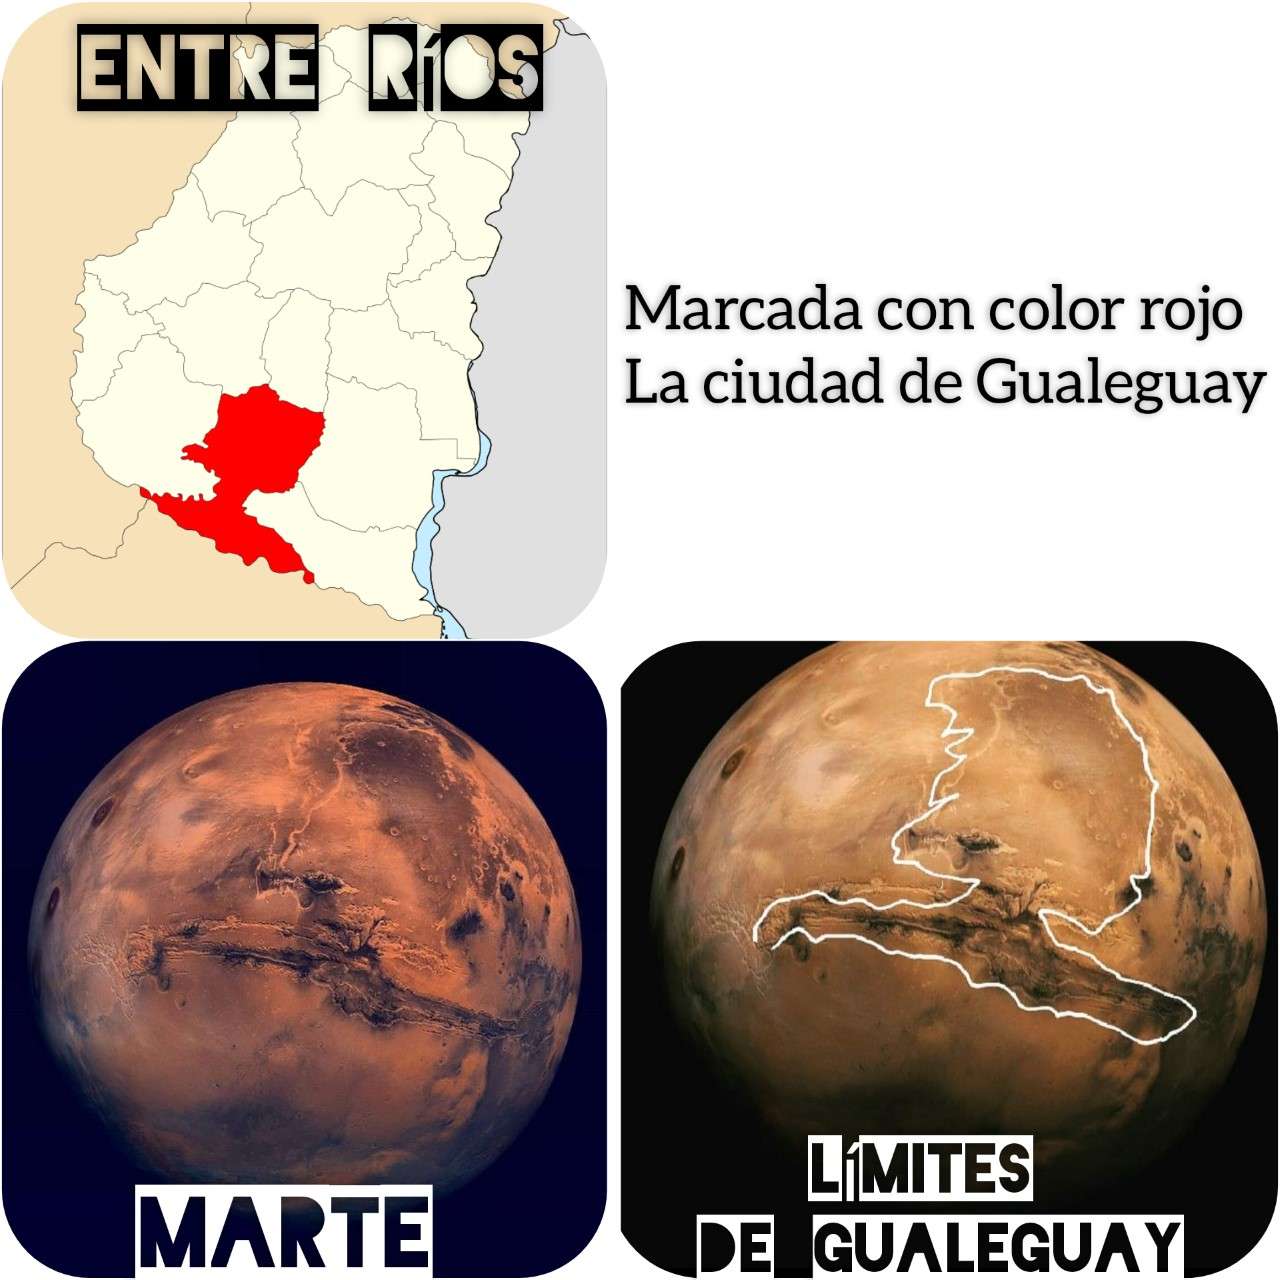 Gualeguay y una alucinante coincidencia marciana